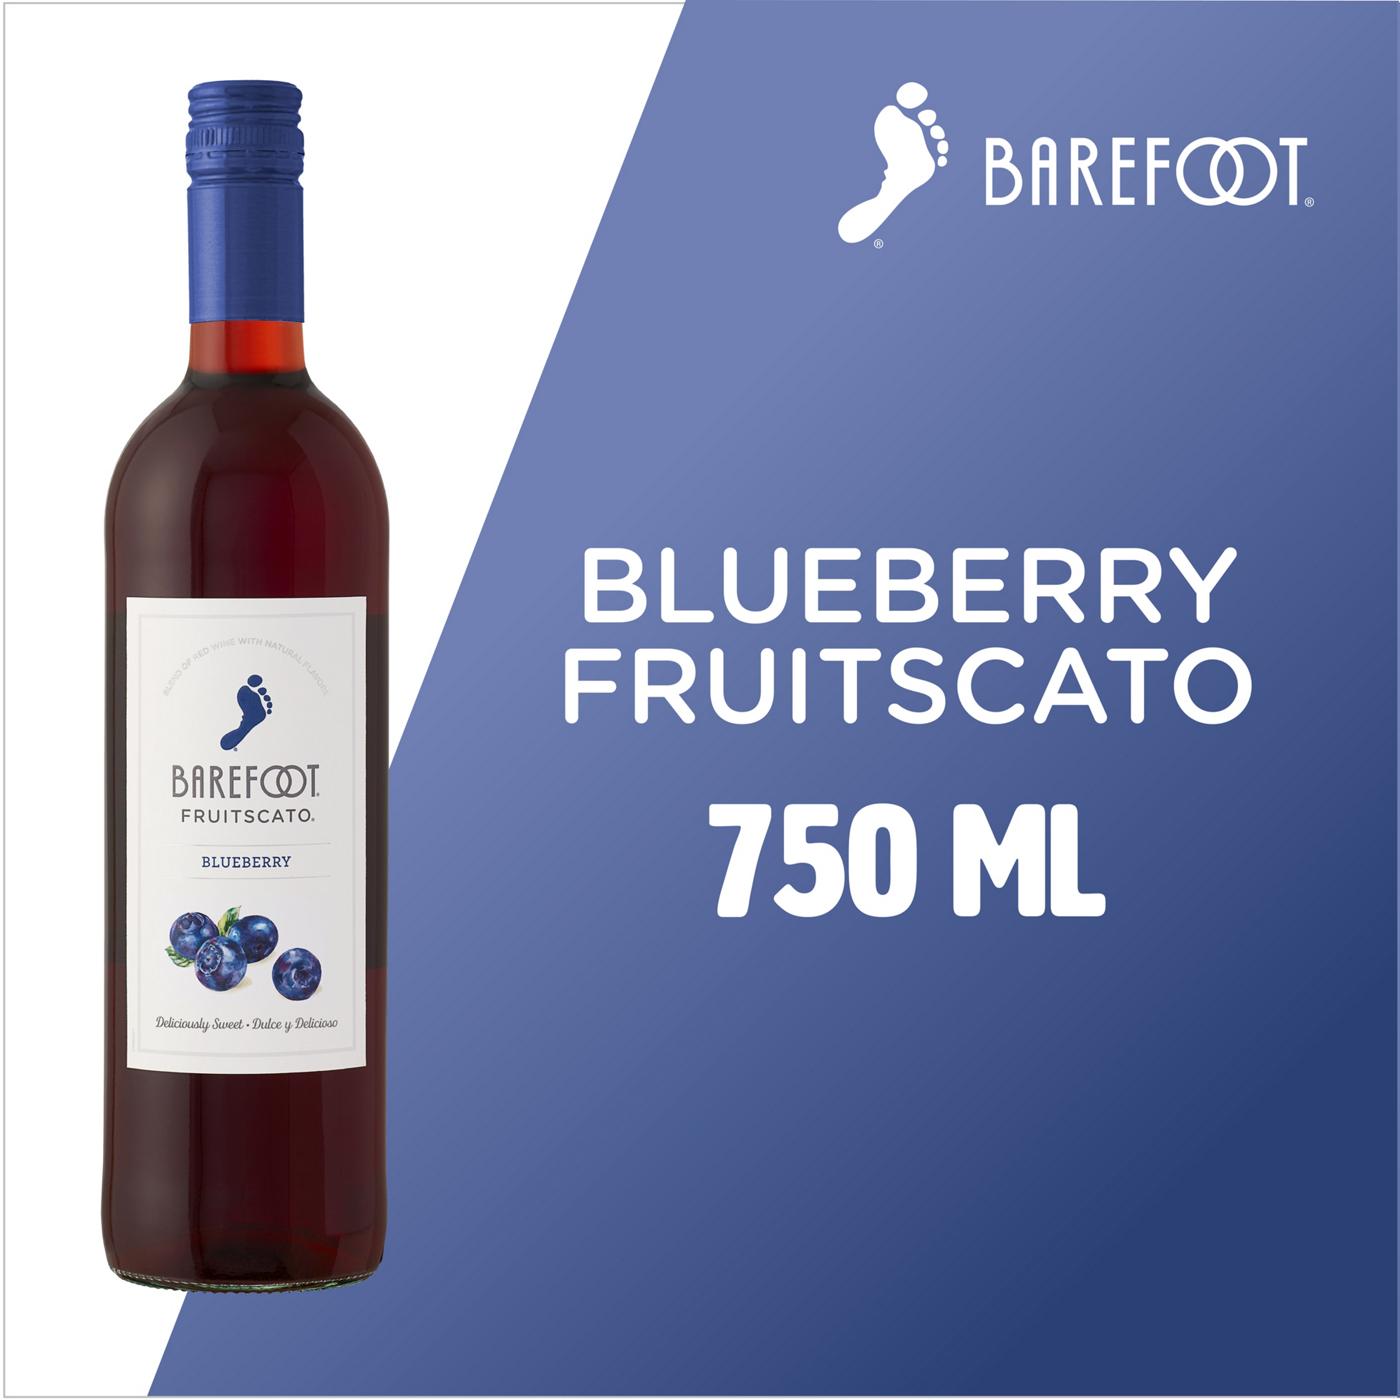 Barefoot Blueberry Fruitscato; image 7 of 8